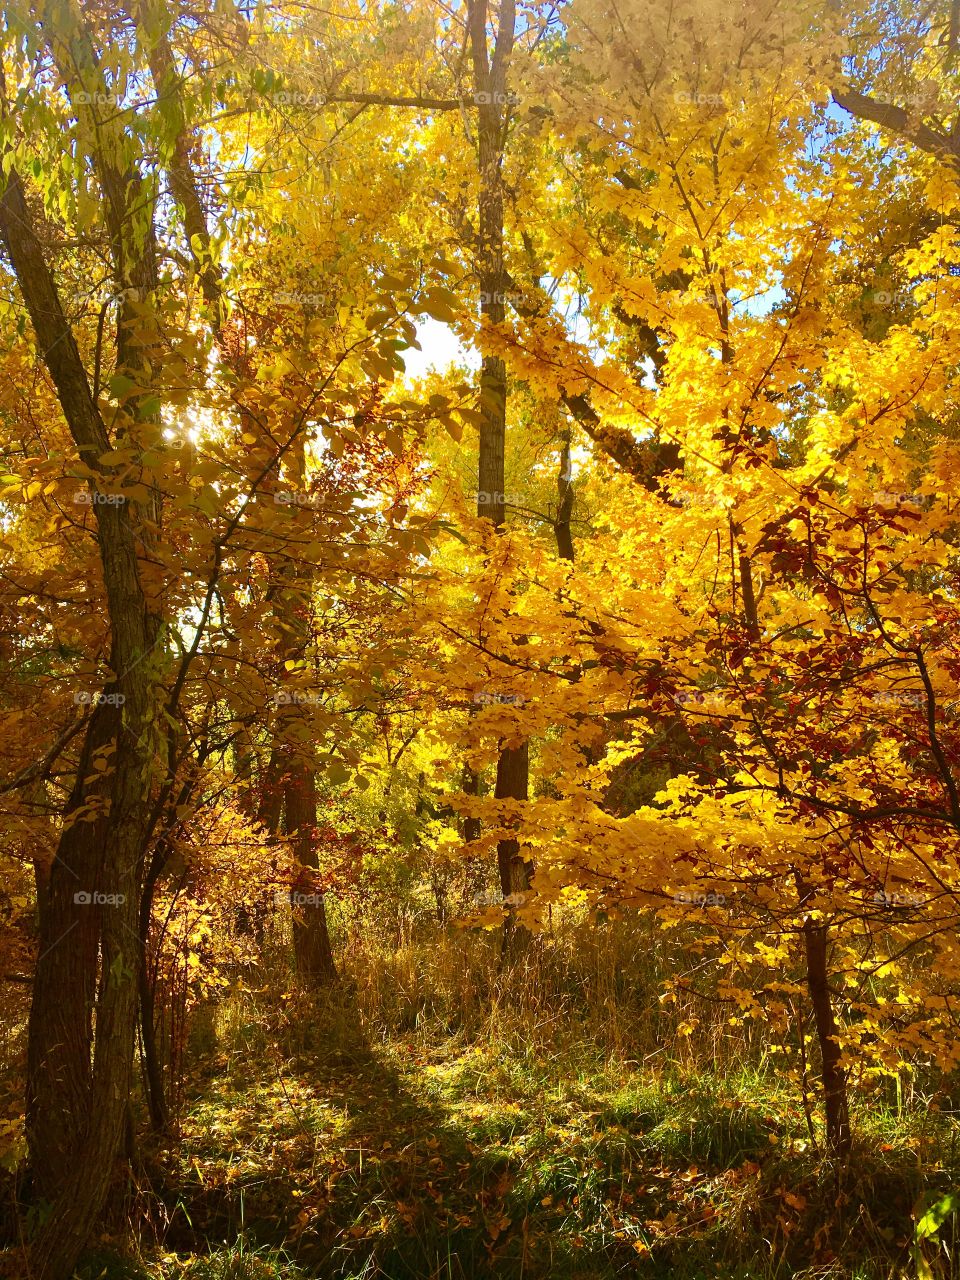 Fall, Leaf, Maple, Wood, Tree